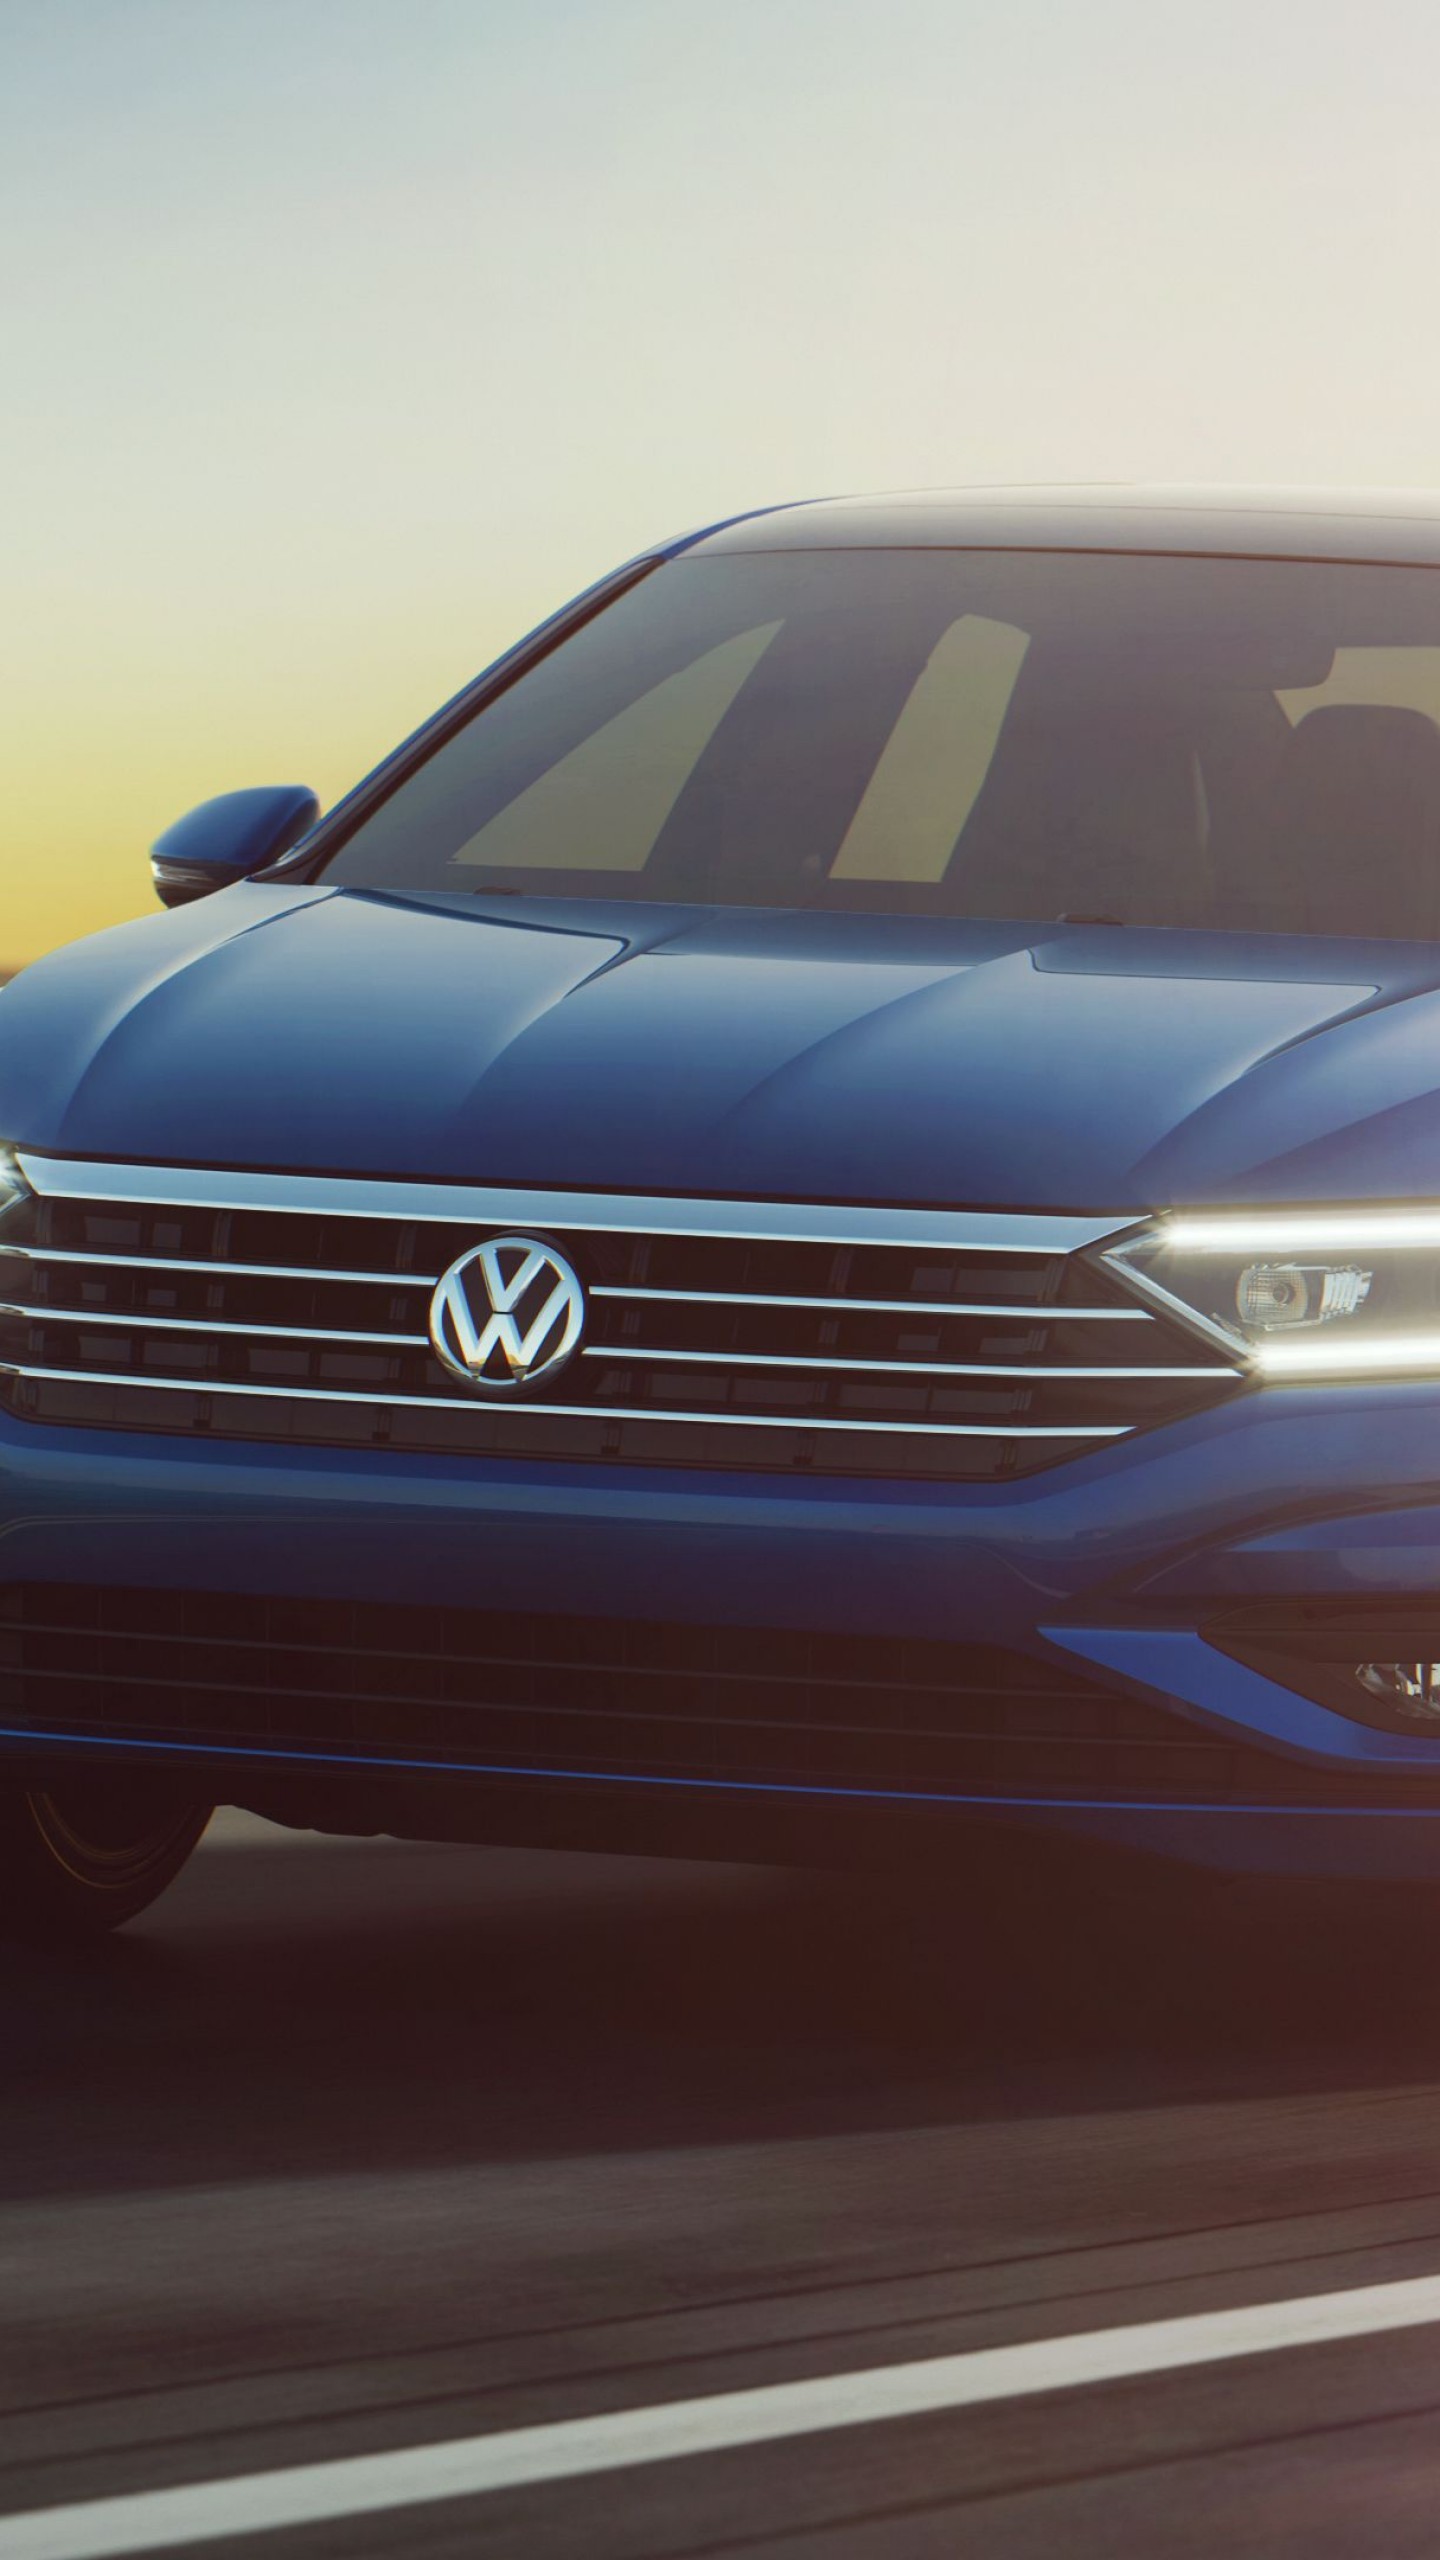 2k - Volkswagen Jetta 2019 Price In India , HD Wallpaper & Backgrounds